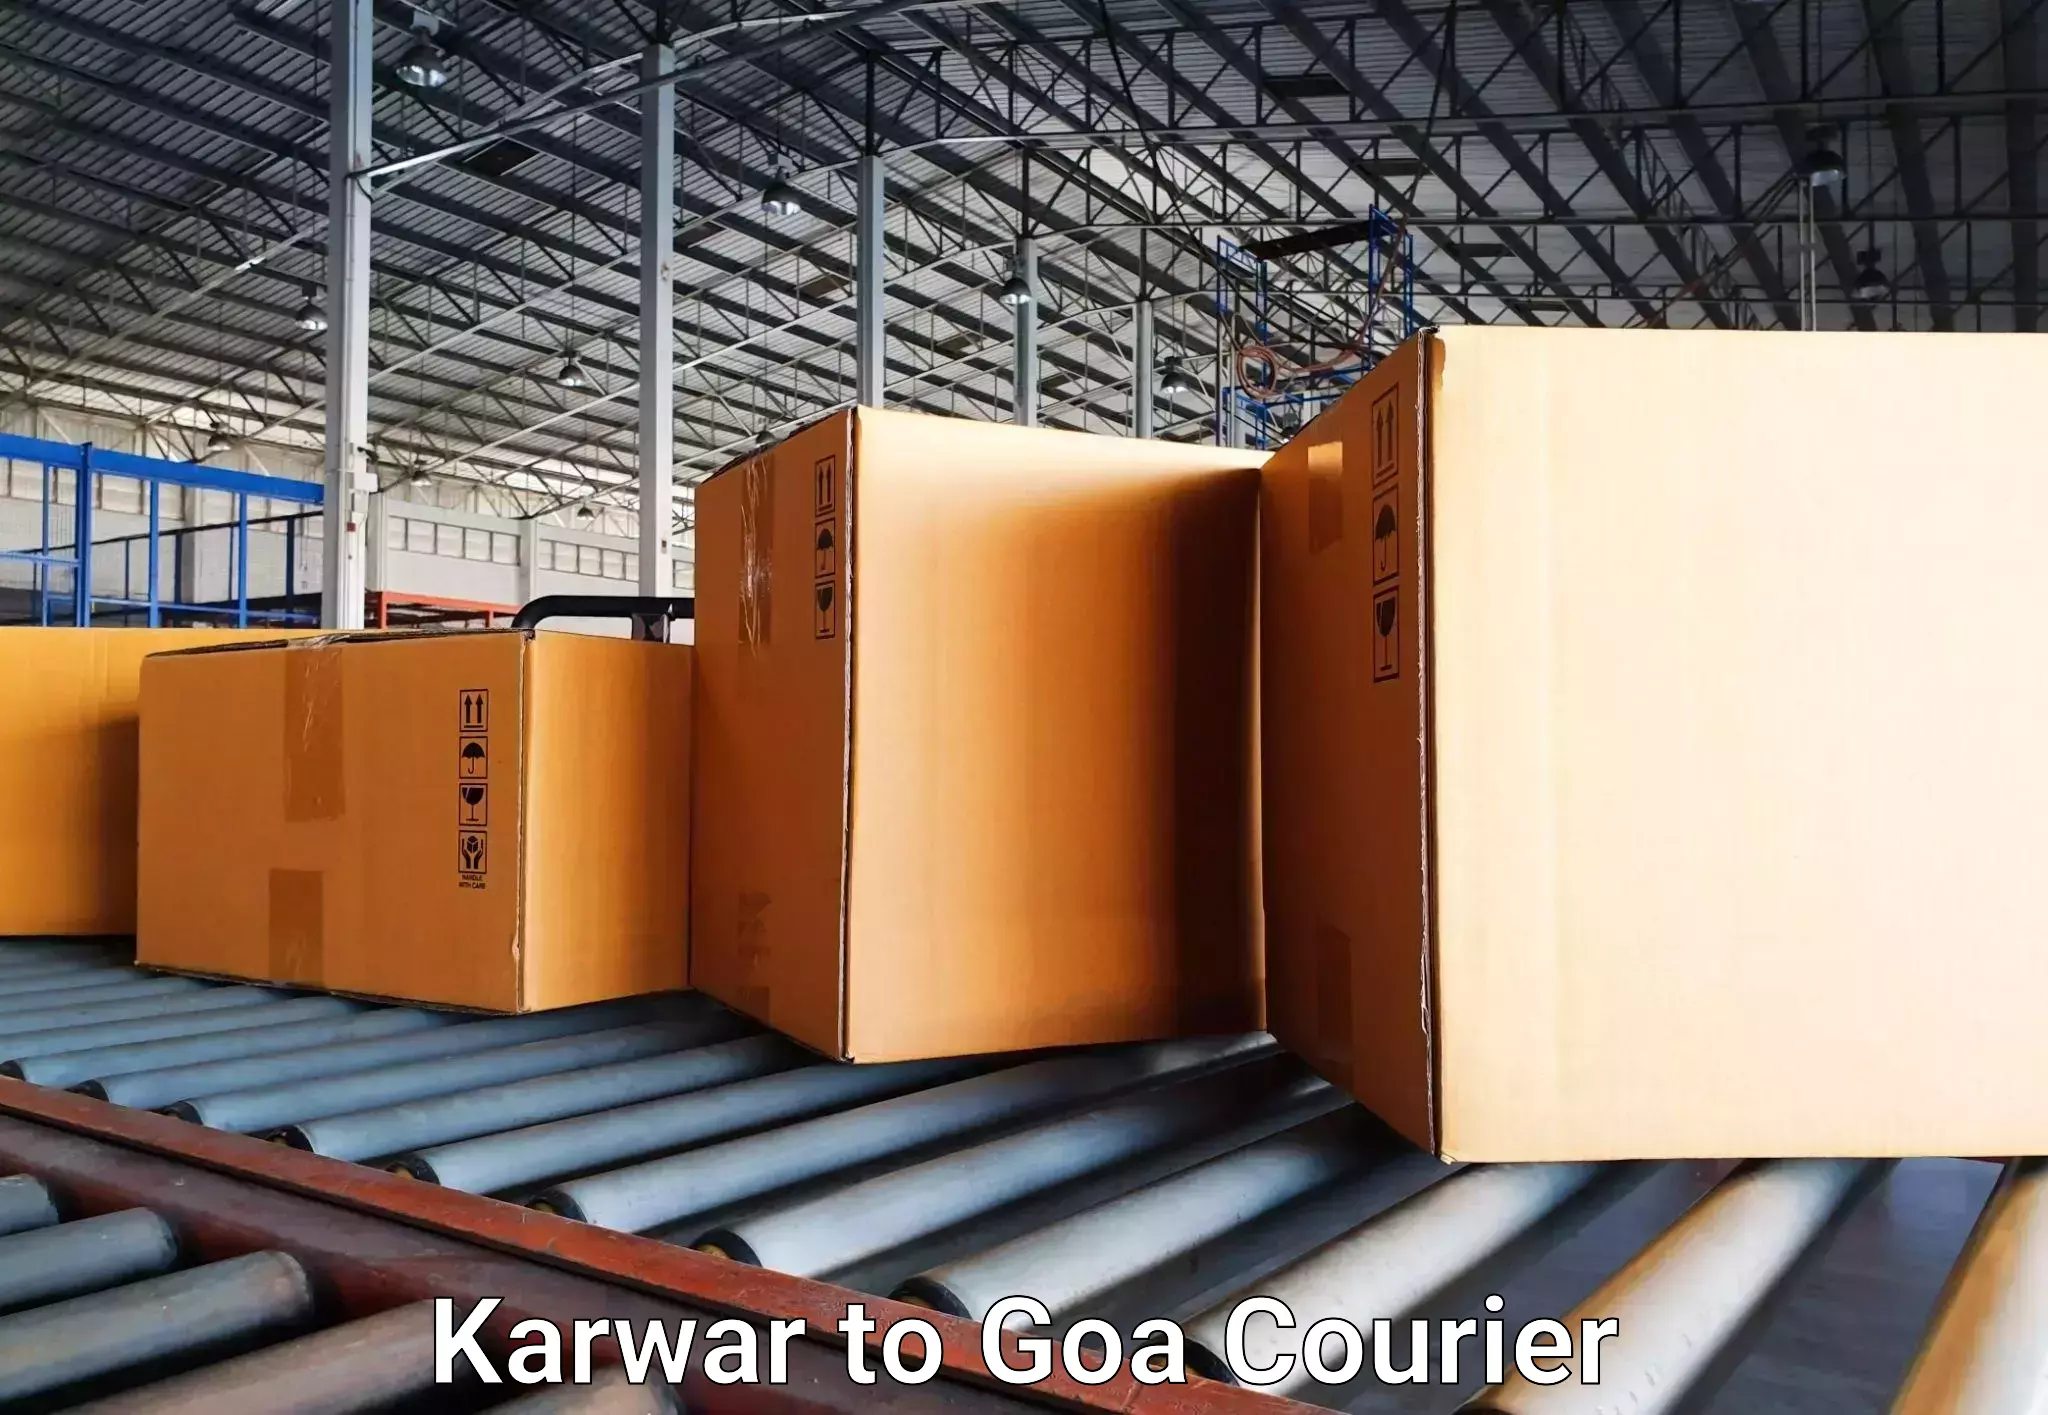 International baggage delivery in Karwar to Vasco da Gama